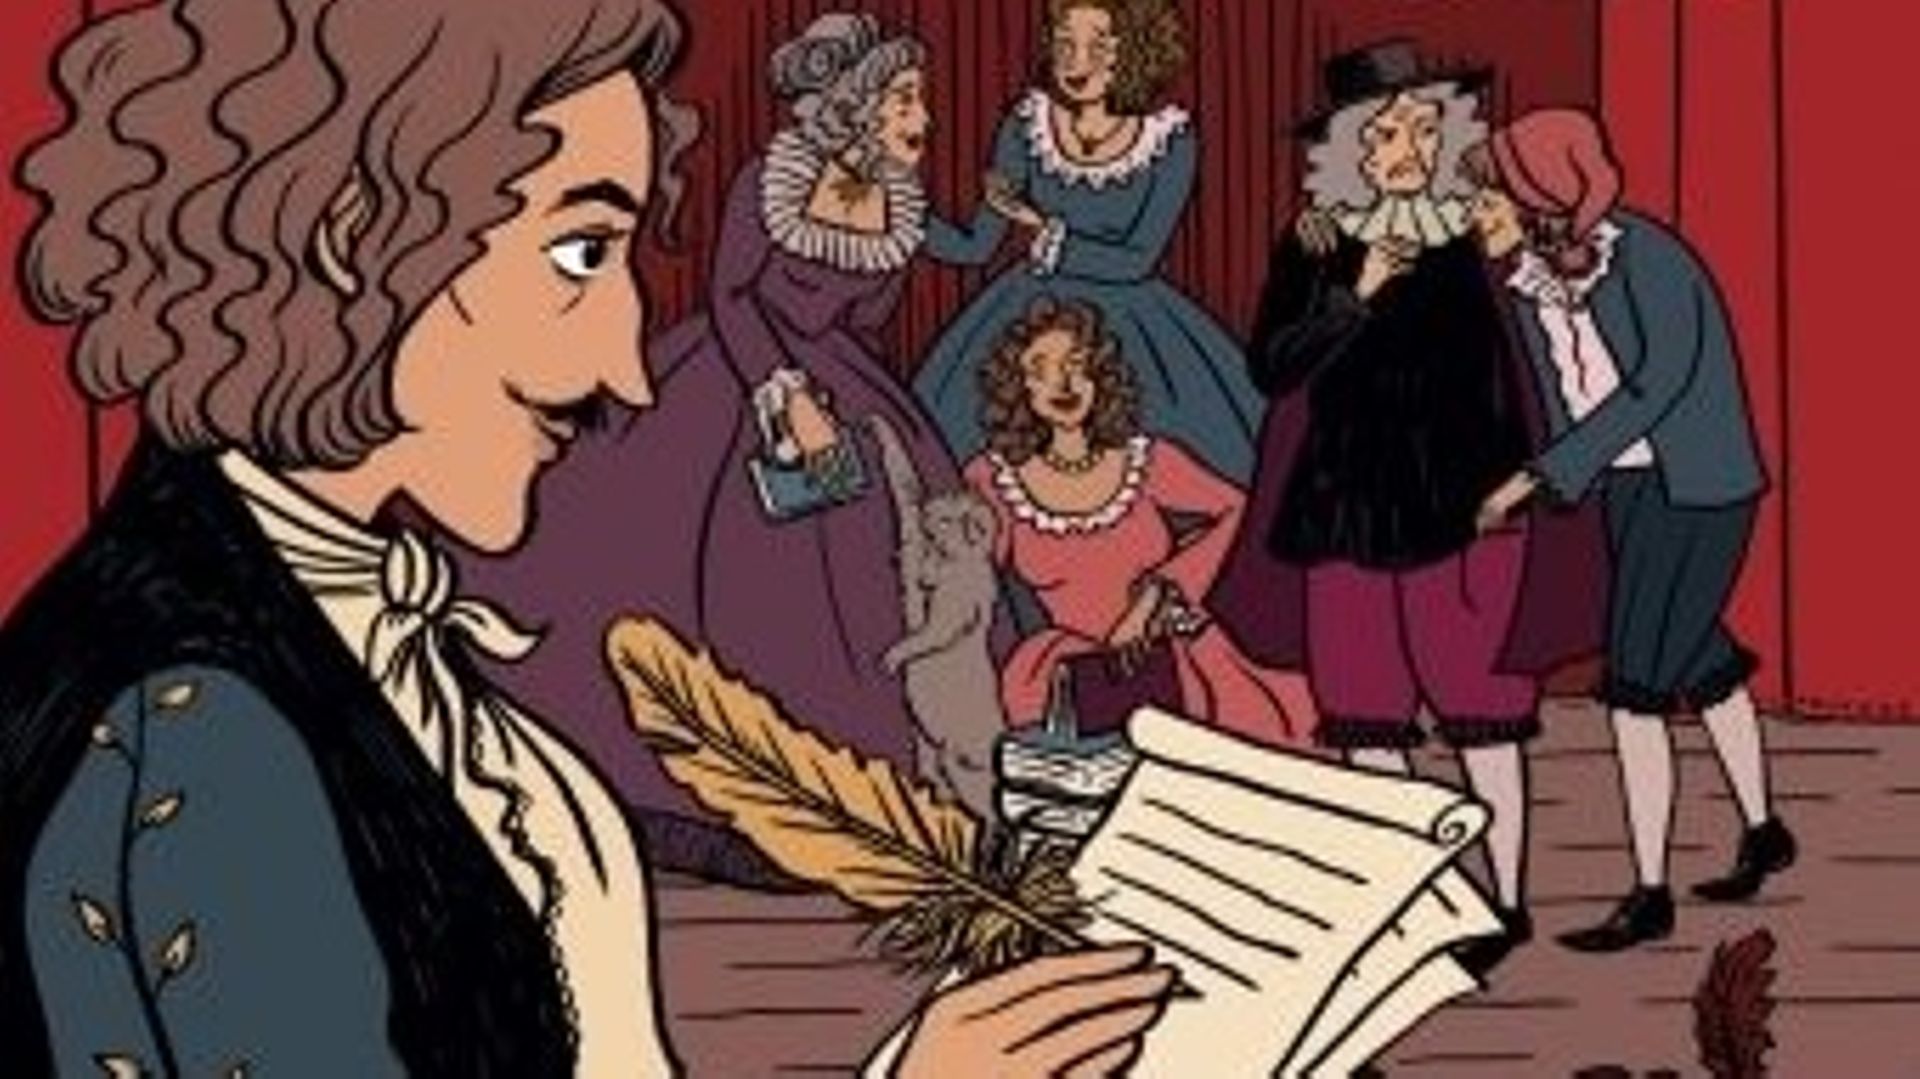 Couverture de la bande dessinée Molière, parue aux éditions Casterman